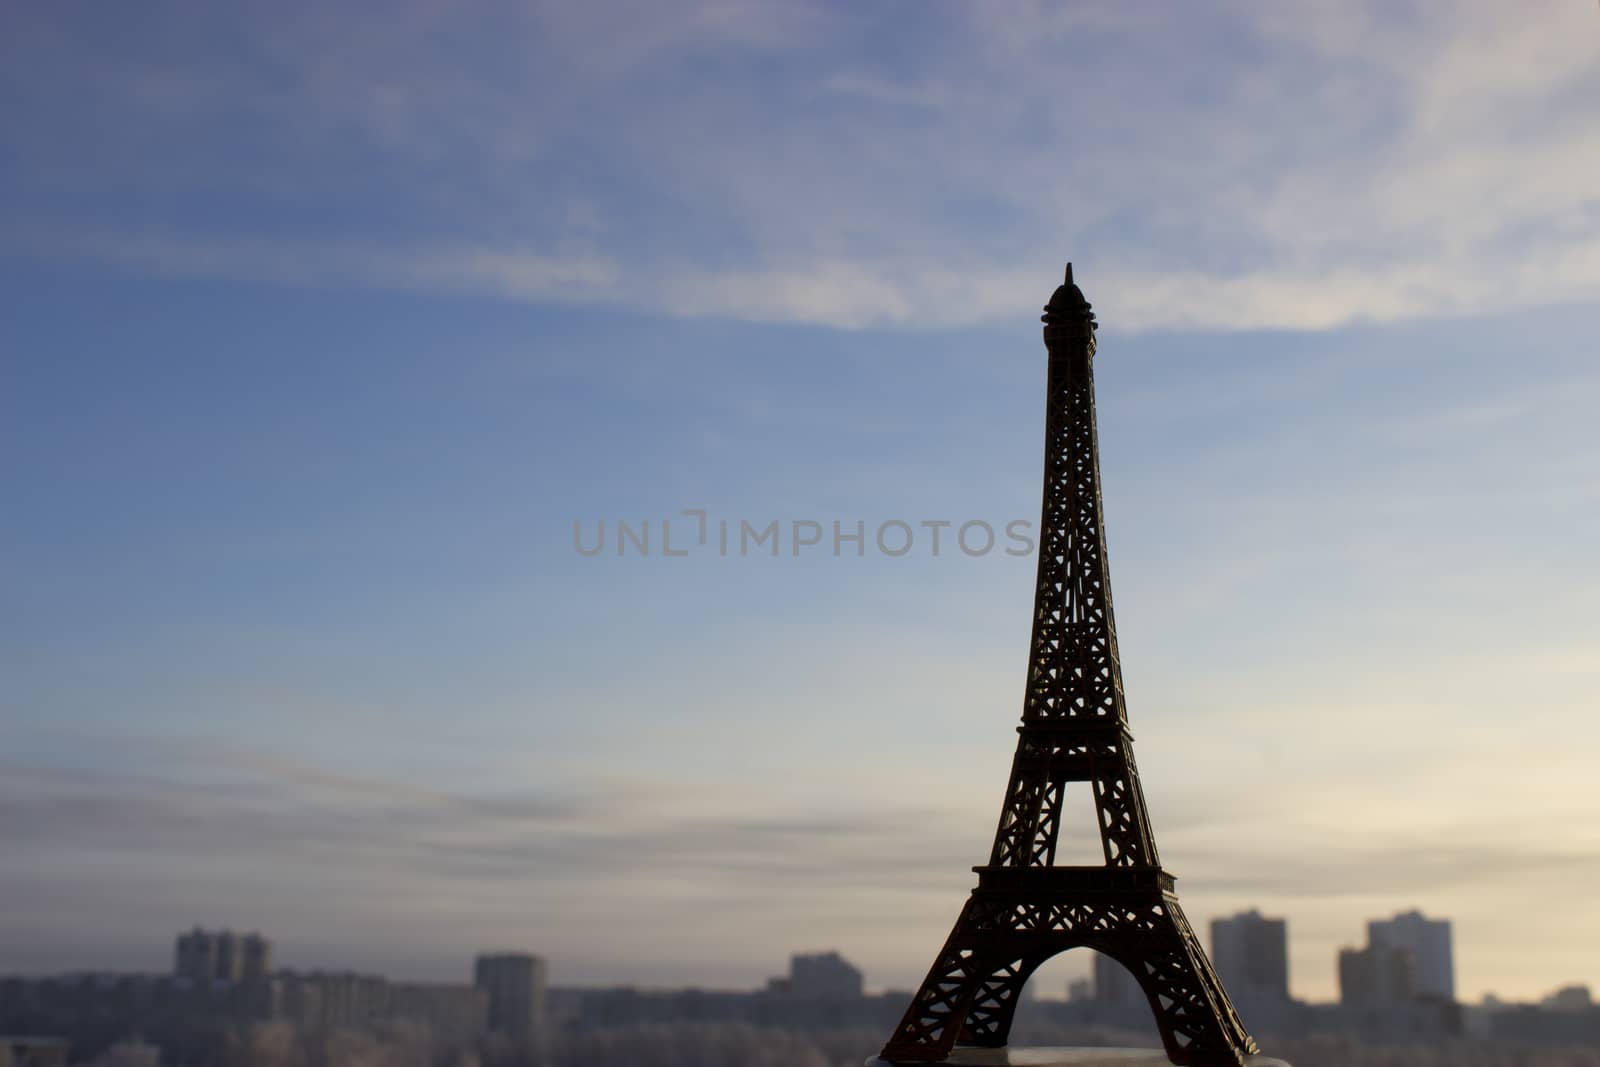 miniature of Tour Eiffel in Paris by liwei12